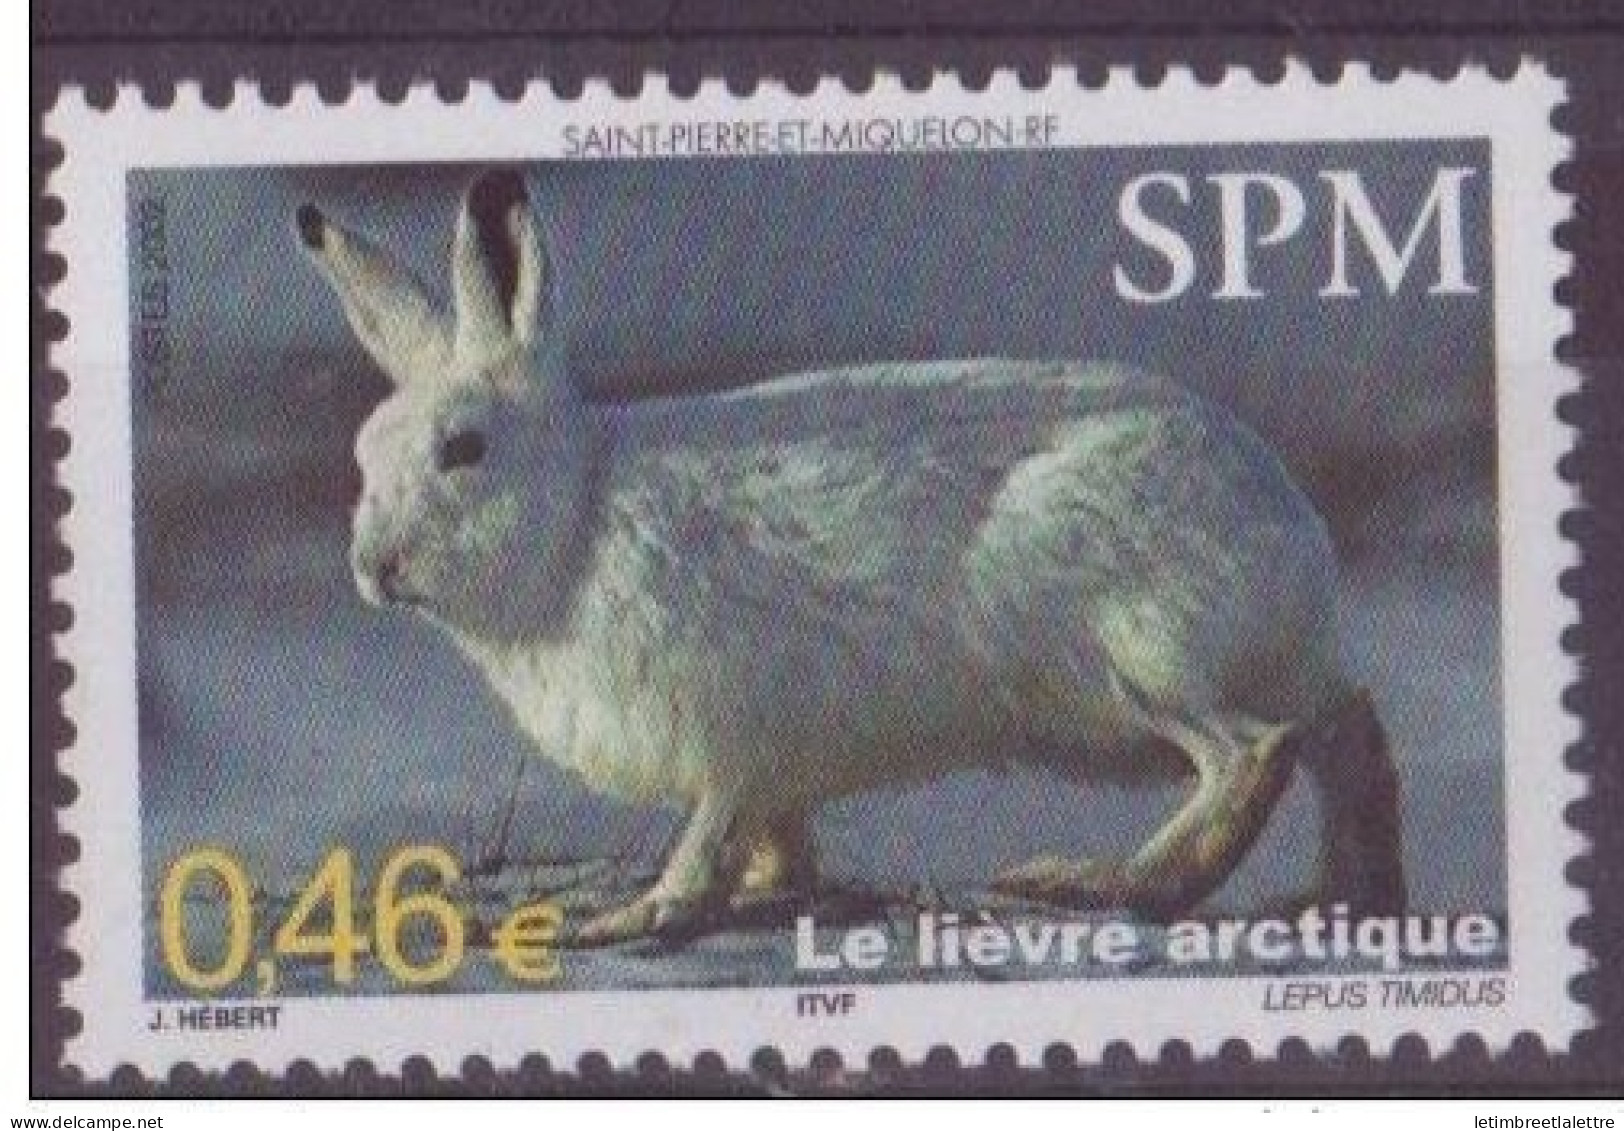 Saint Pierre Et Miquelon - YT N° 782 ** - Neuf Sans Charnière - 2002 - Ongebruikt